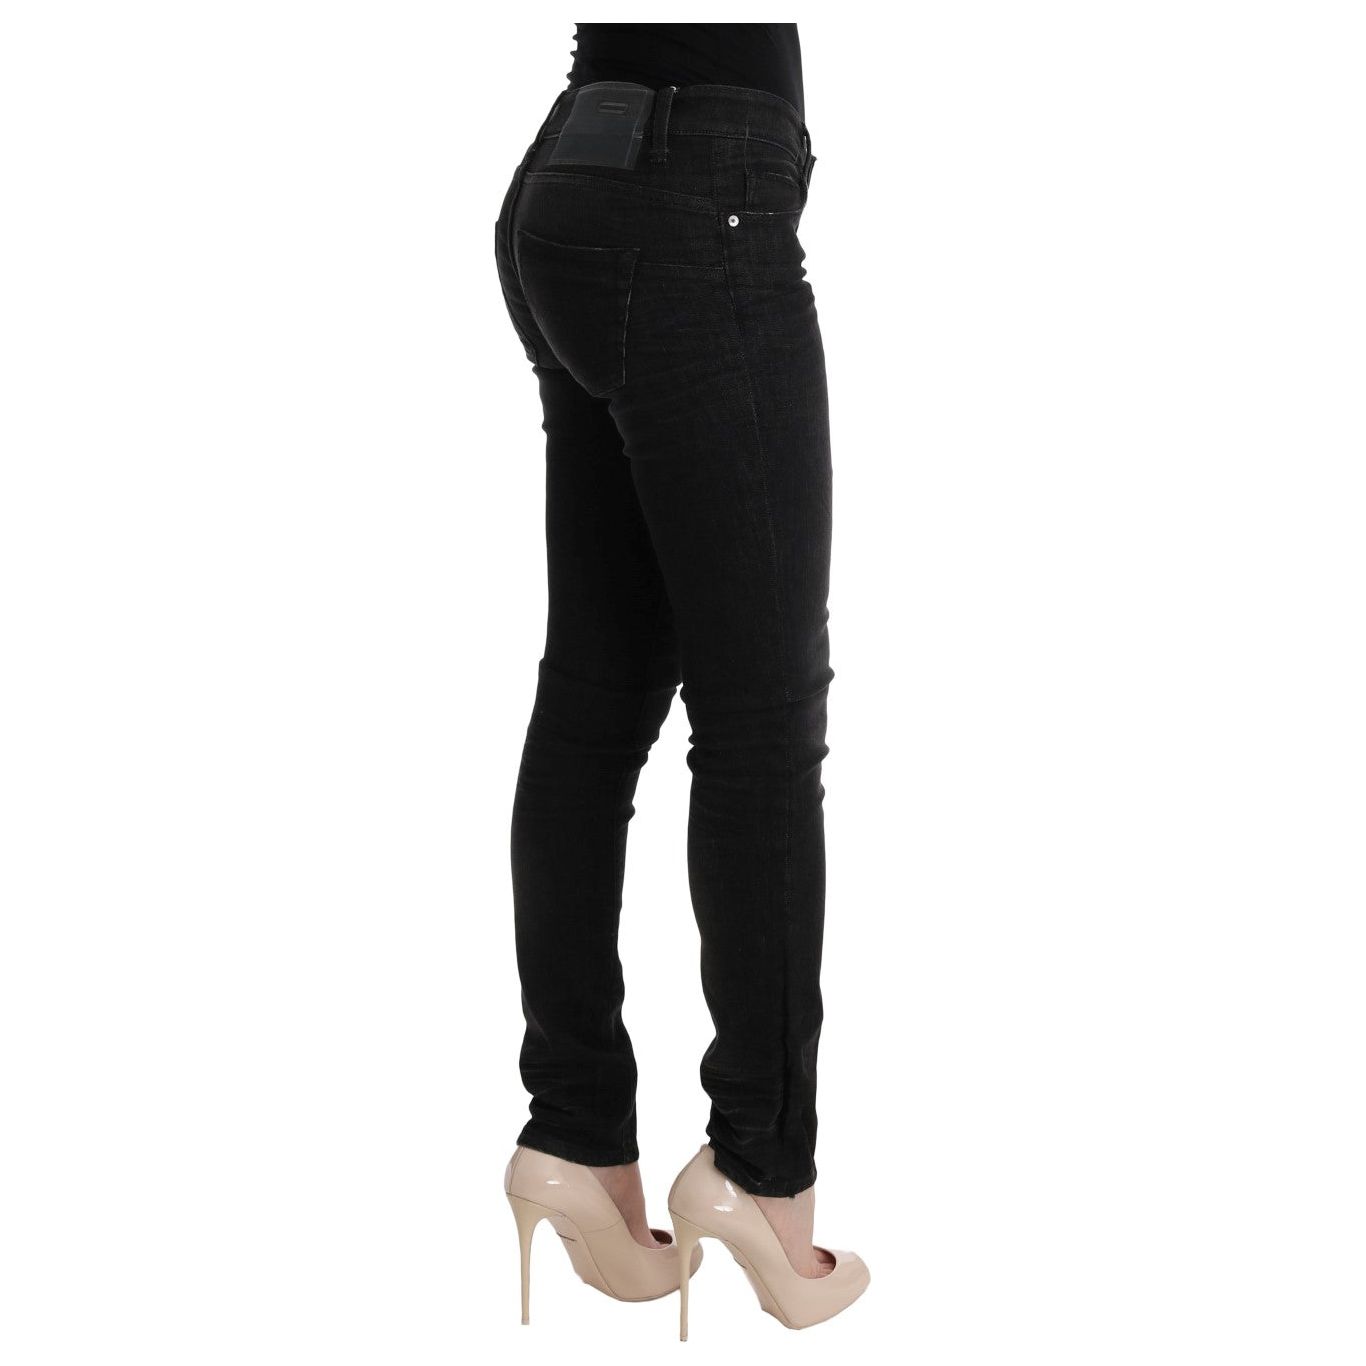 Acht Chic Slim Fit Black Cotton Jeans Jeans & Pants black-denim-cotton-bottoms-slim-fit-jeans 449507-black-denim-cotton-bottoms-slim-fit-jeans-3.jpg